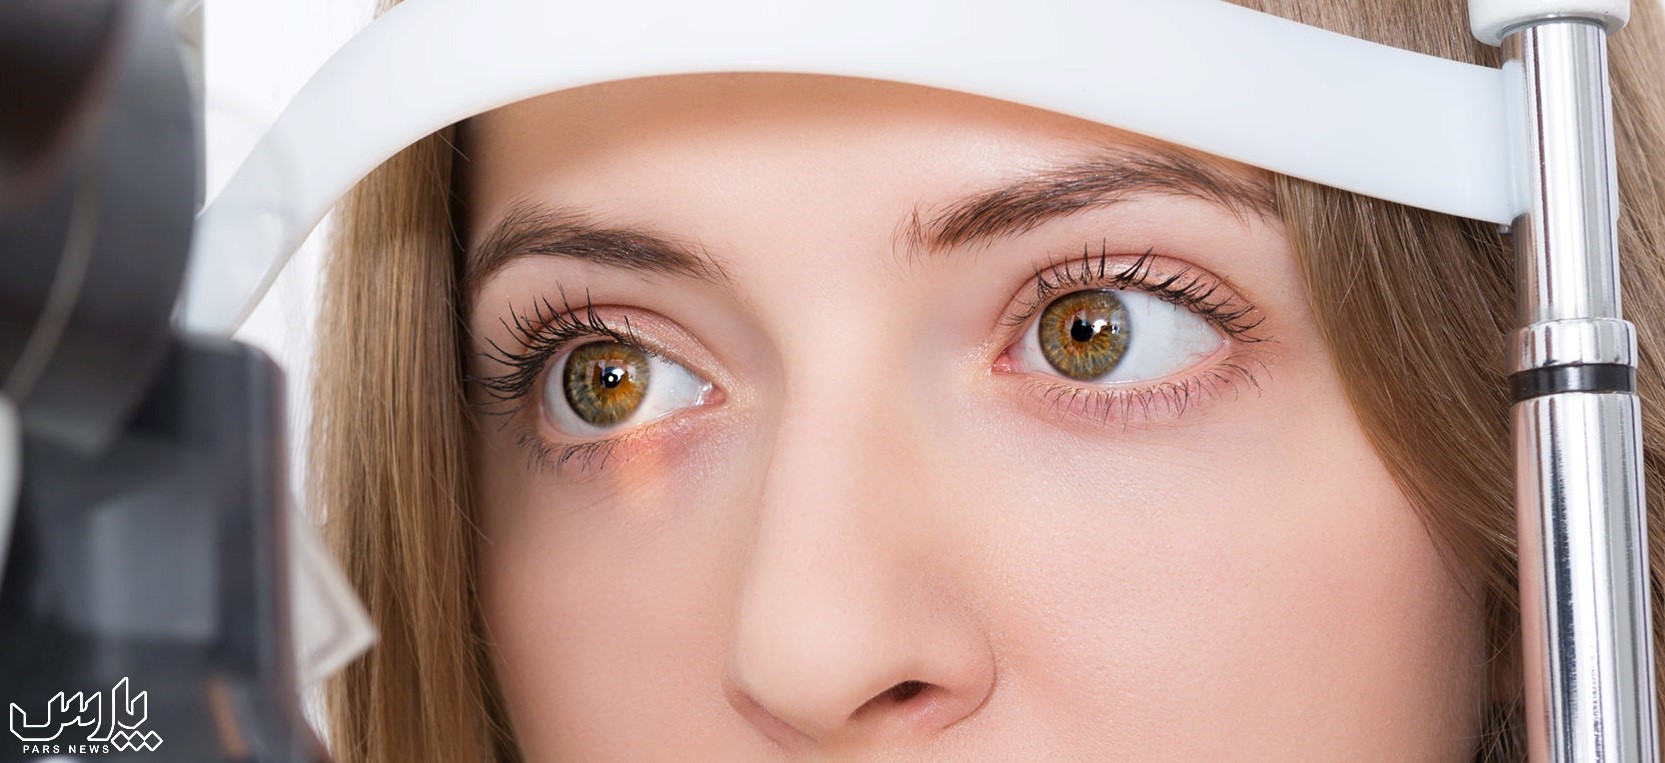 معاینه چشم - درمان خانگی خستگی چشم